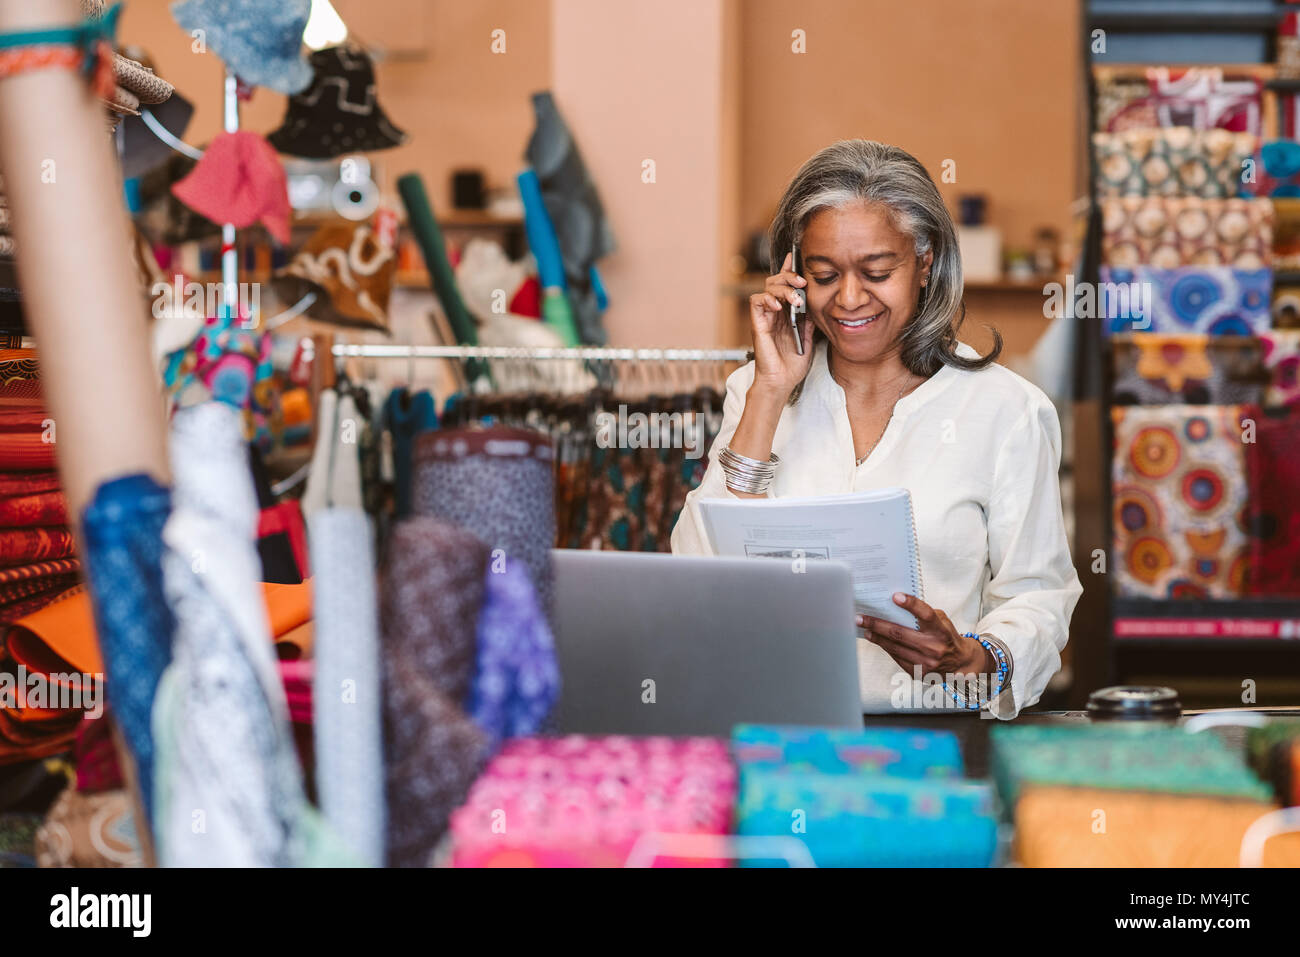 Lächelnd reife Stoff shop besitzer hinter einen Zähler von bunten Textilien Schreibarbeit Lesung und Gespräch am Mobiltelefon umgeben stehend Stockfoto